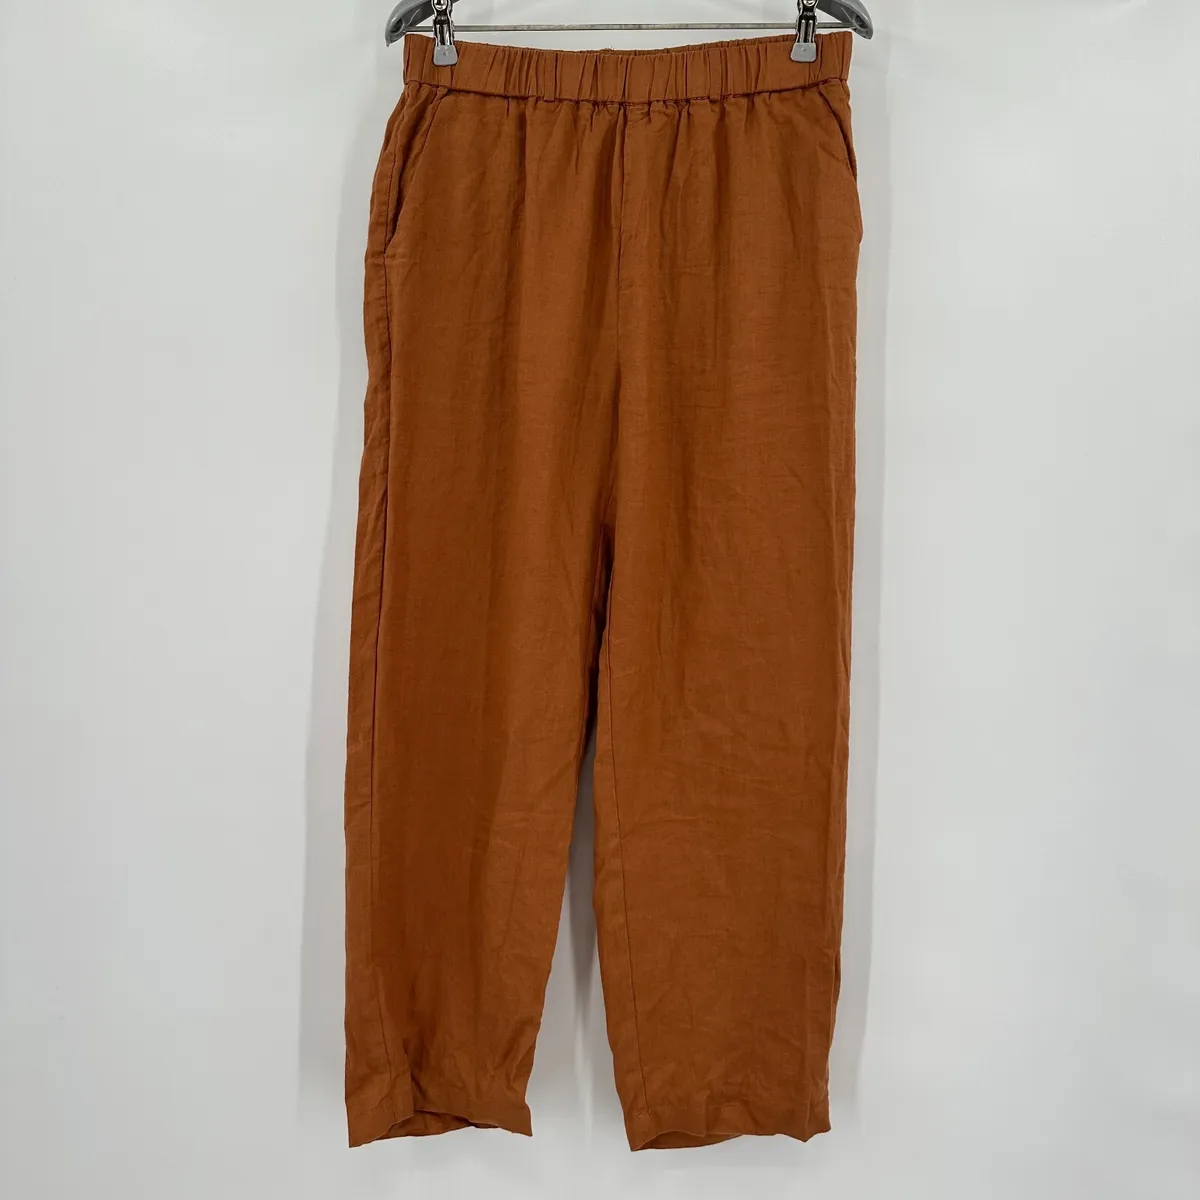 Quince Women's Terracotta European Linen Pants sz S Relaxed Elastic Waist  NWT